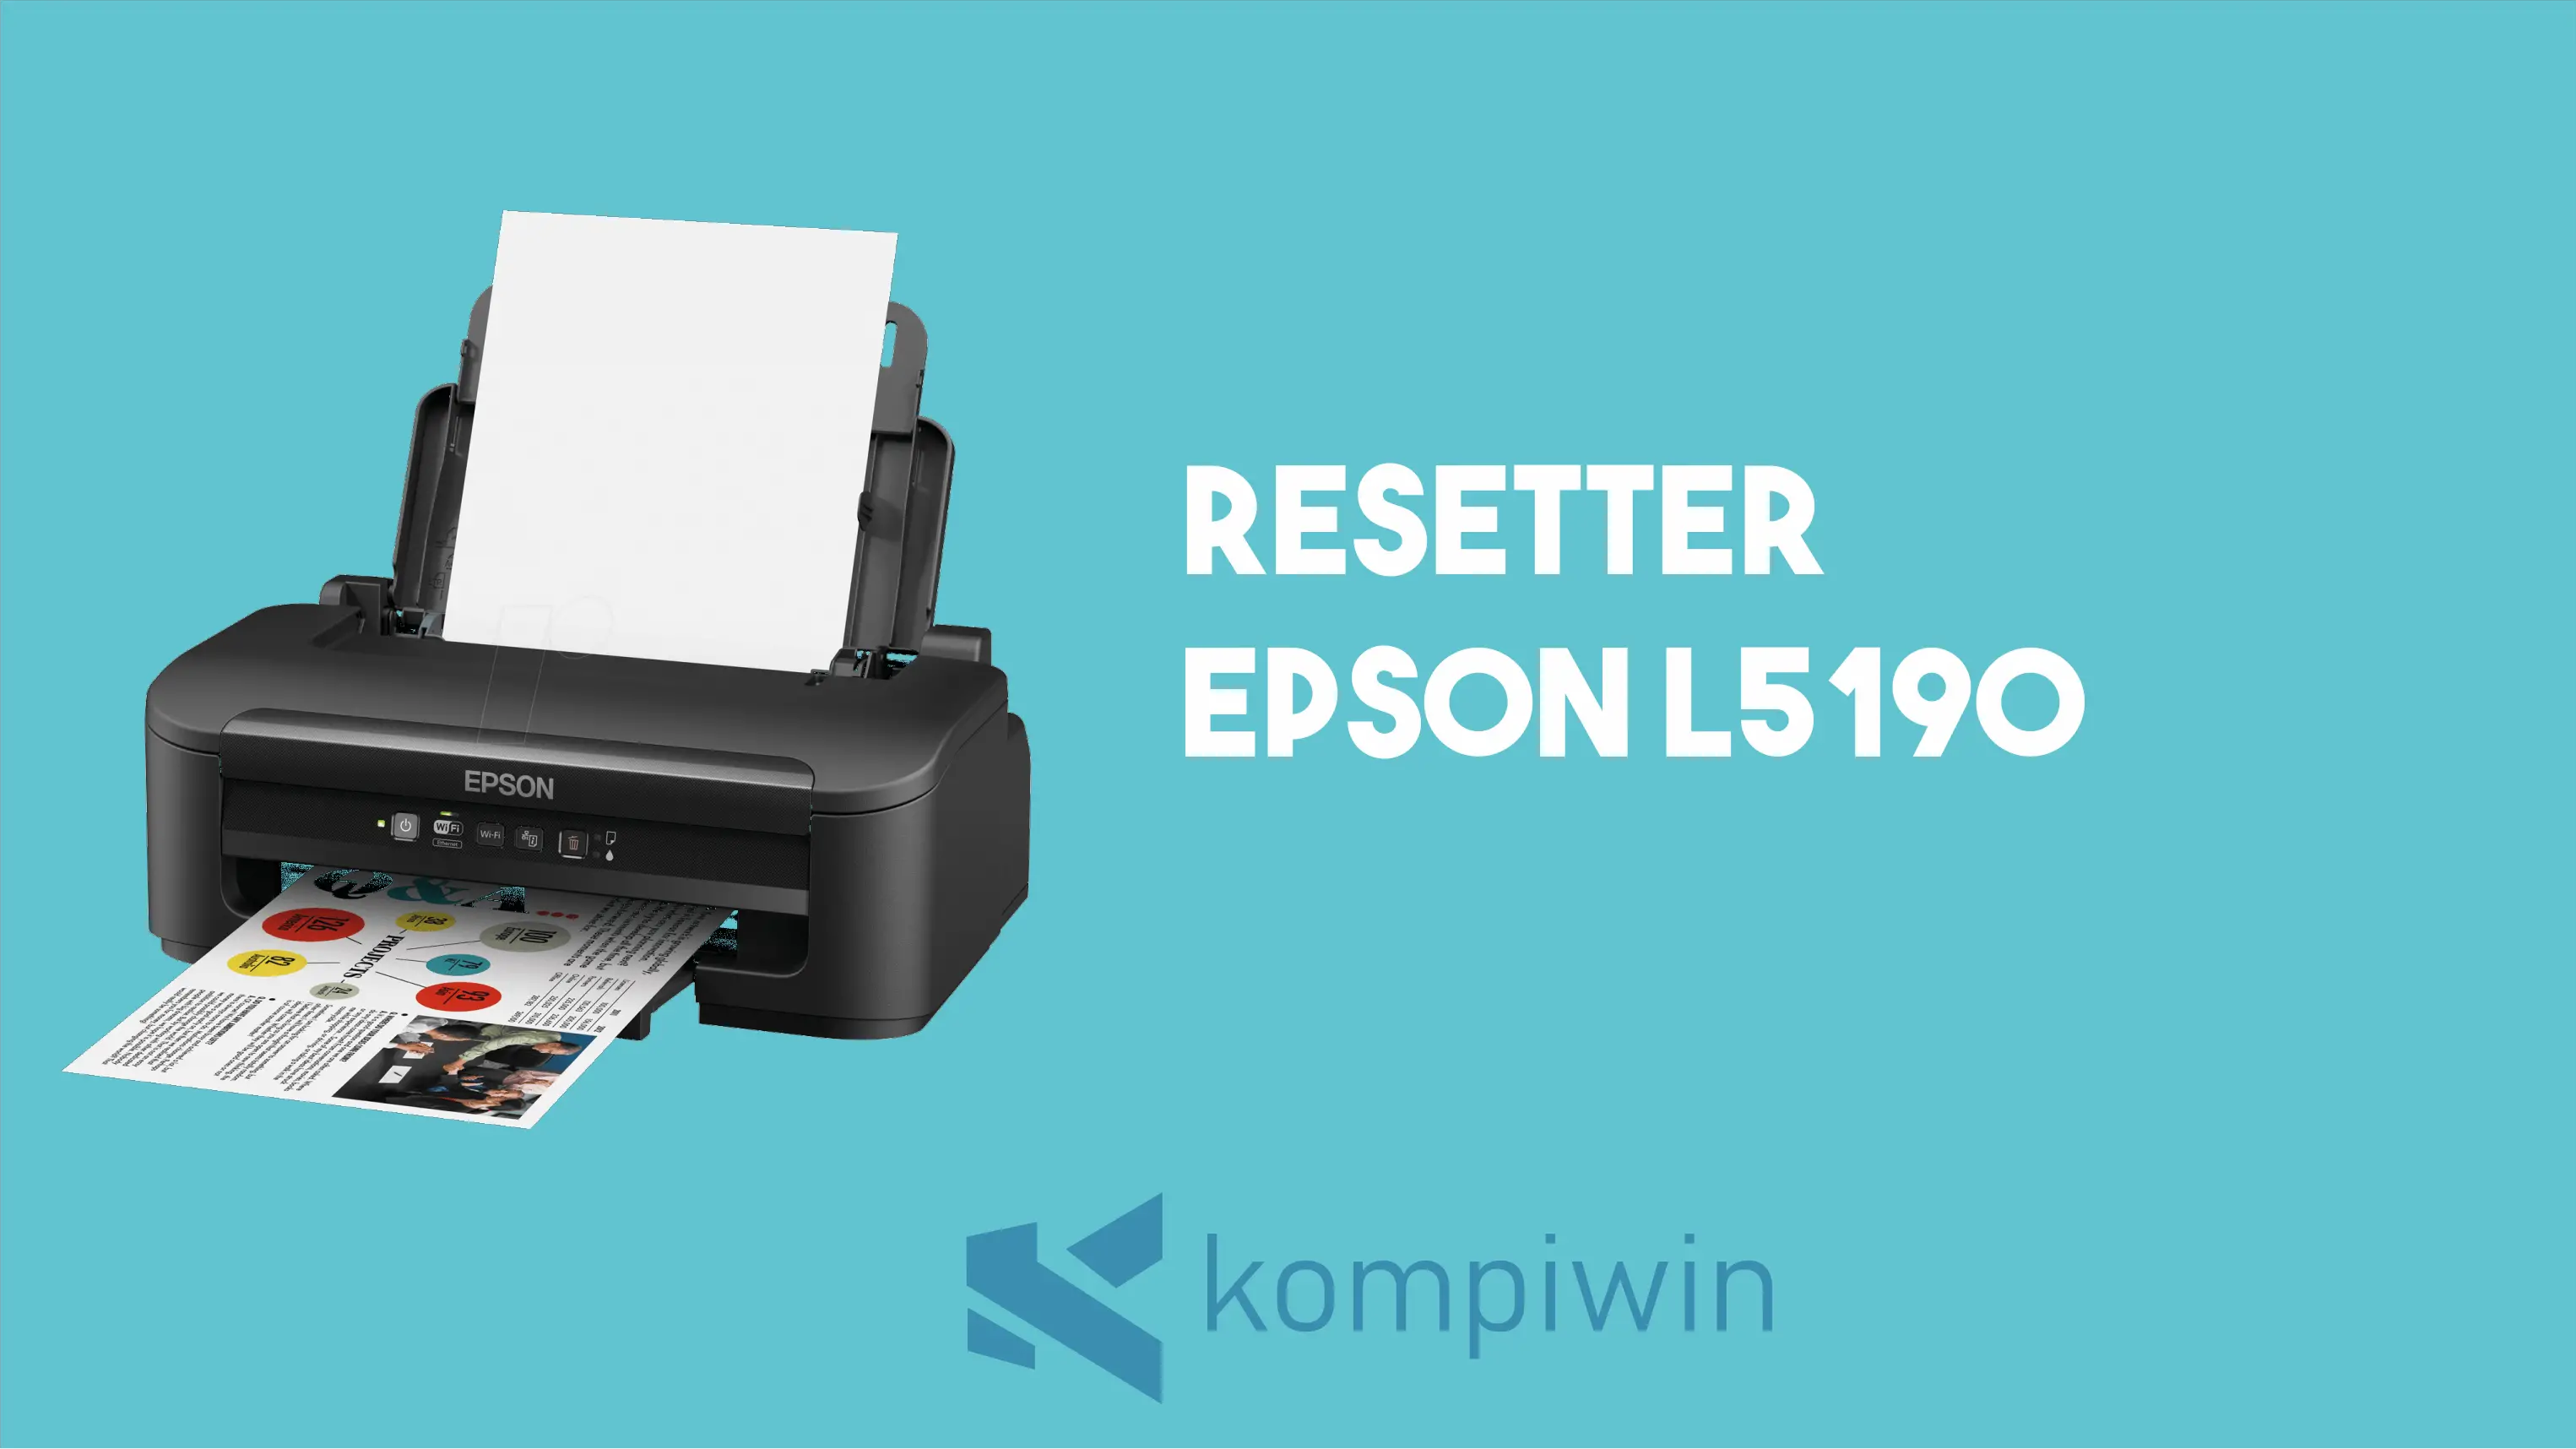 Resetter Epson L5190